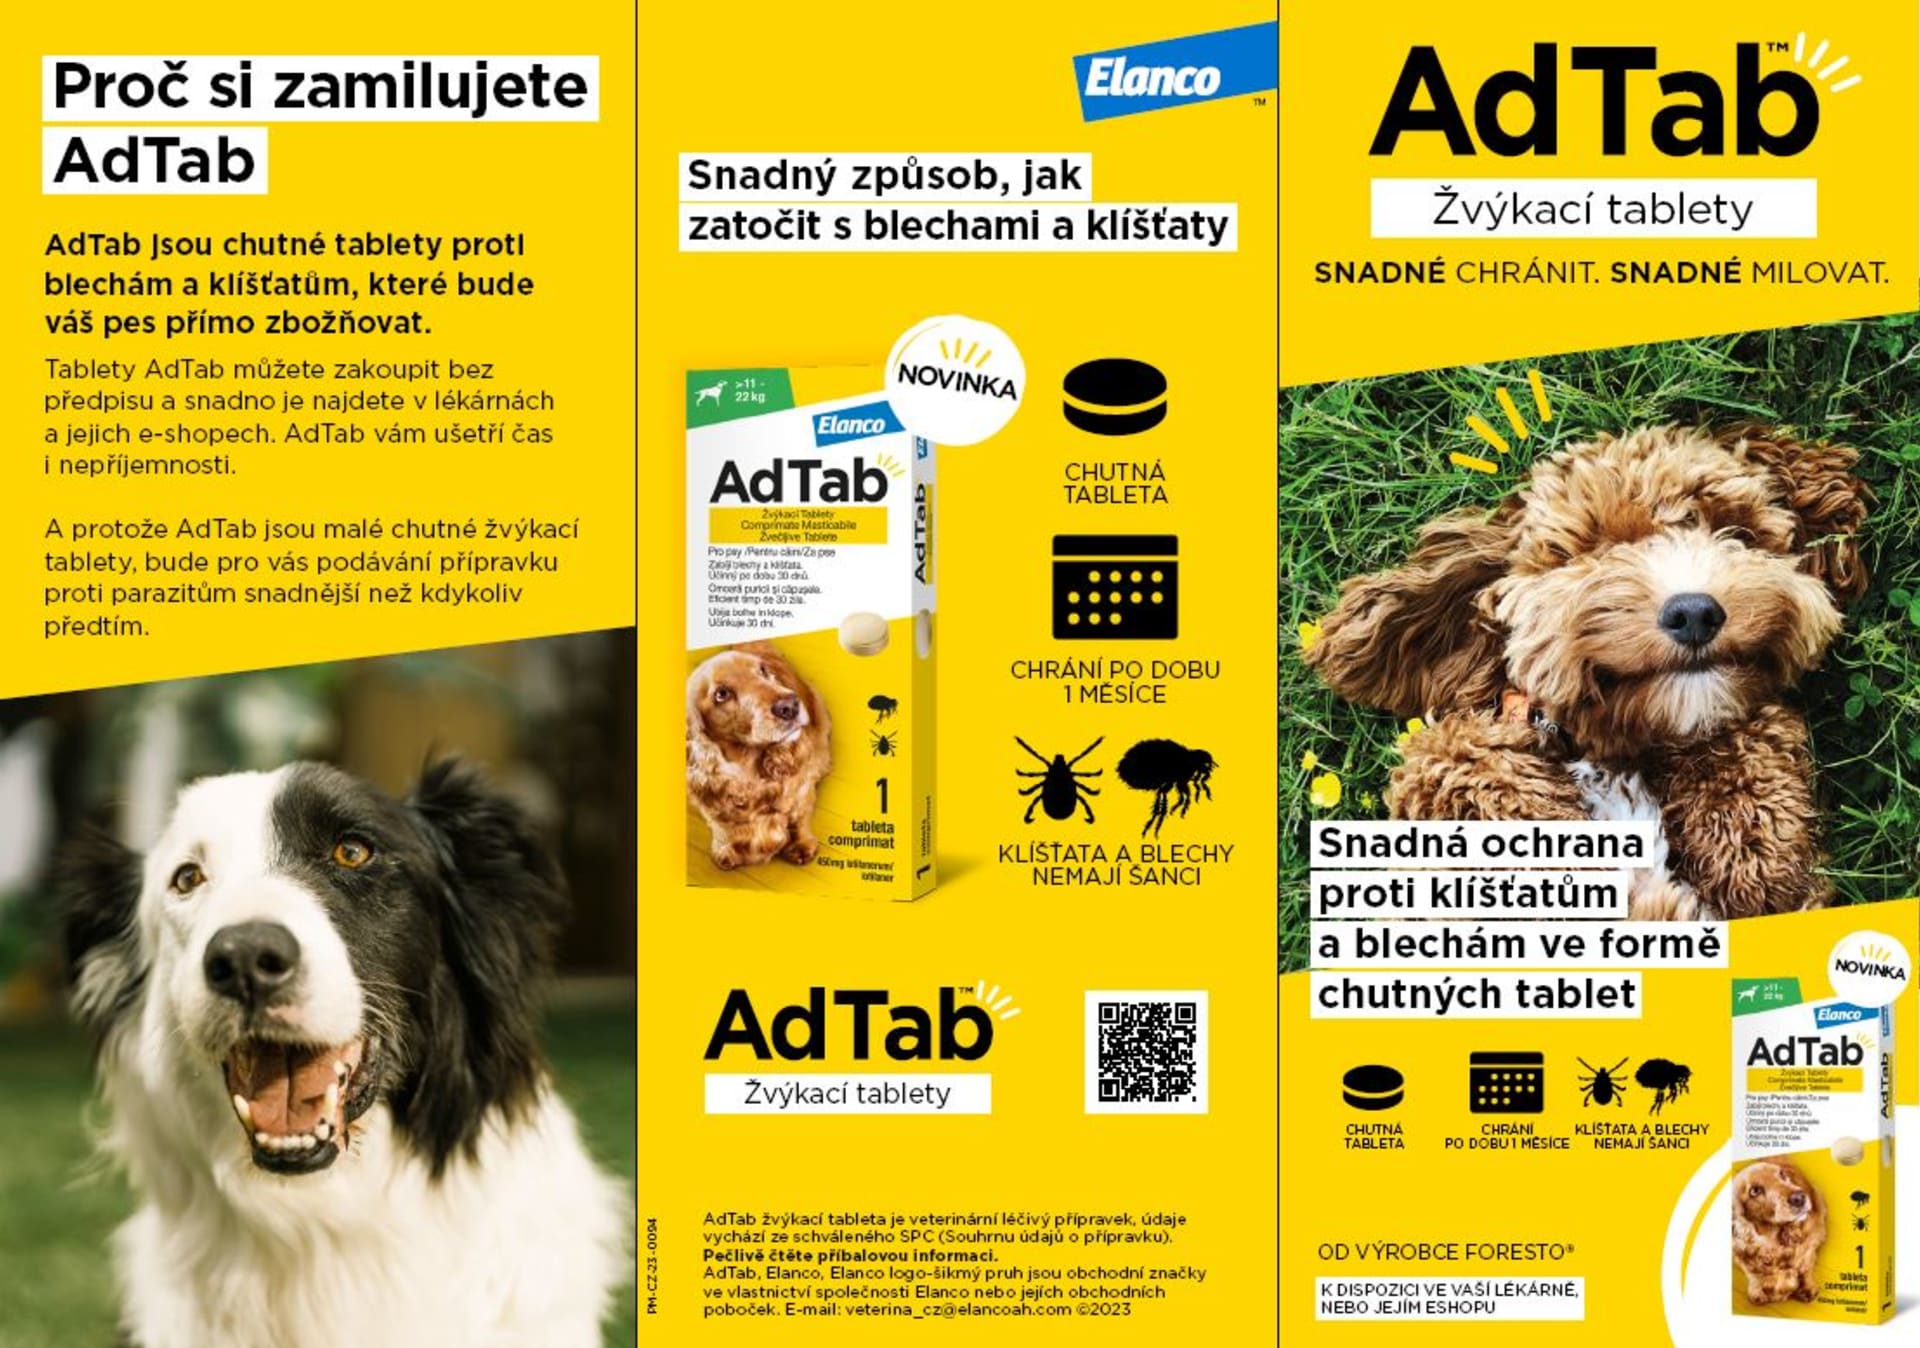 AdTab je malá, ochucená,  žvýkací tableta, která psy a kočky zbaví klíšťat a blech. Je bezpečná, účinná a funguje po dobu jednoho měsíce.